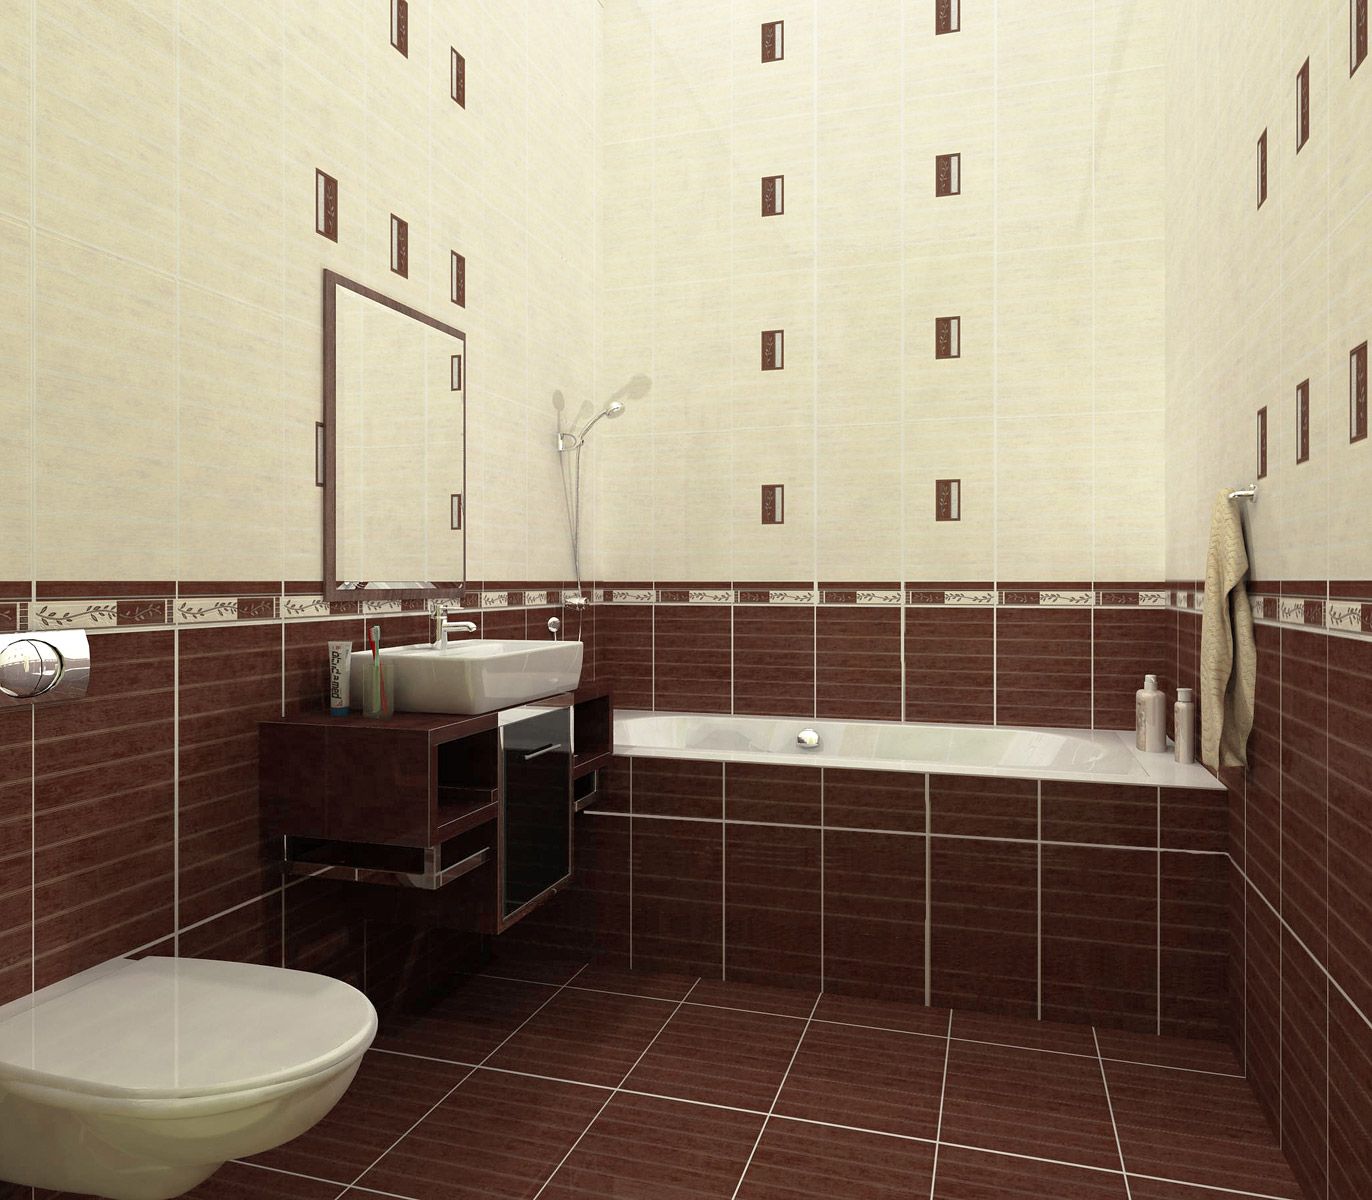 Кафельная плитка коричневого и белого цвета для отделки маленькой ванной комнаты 